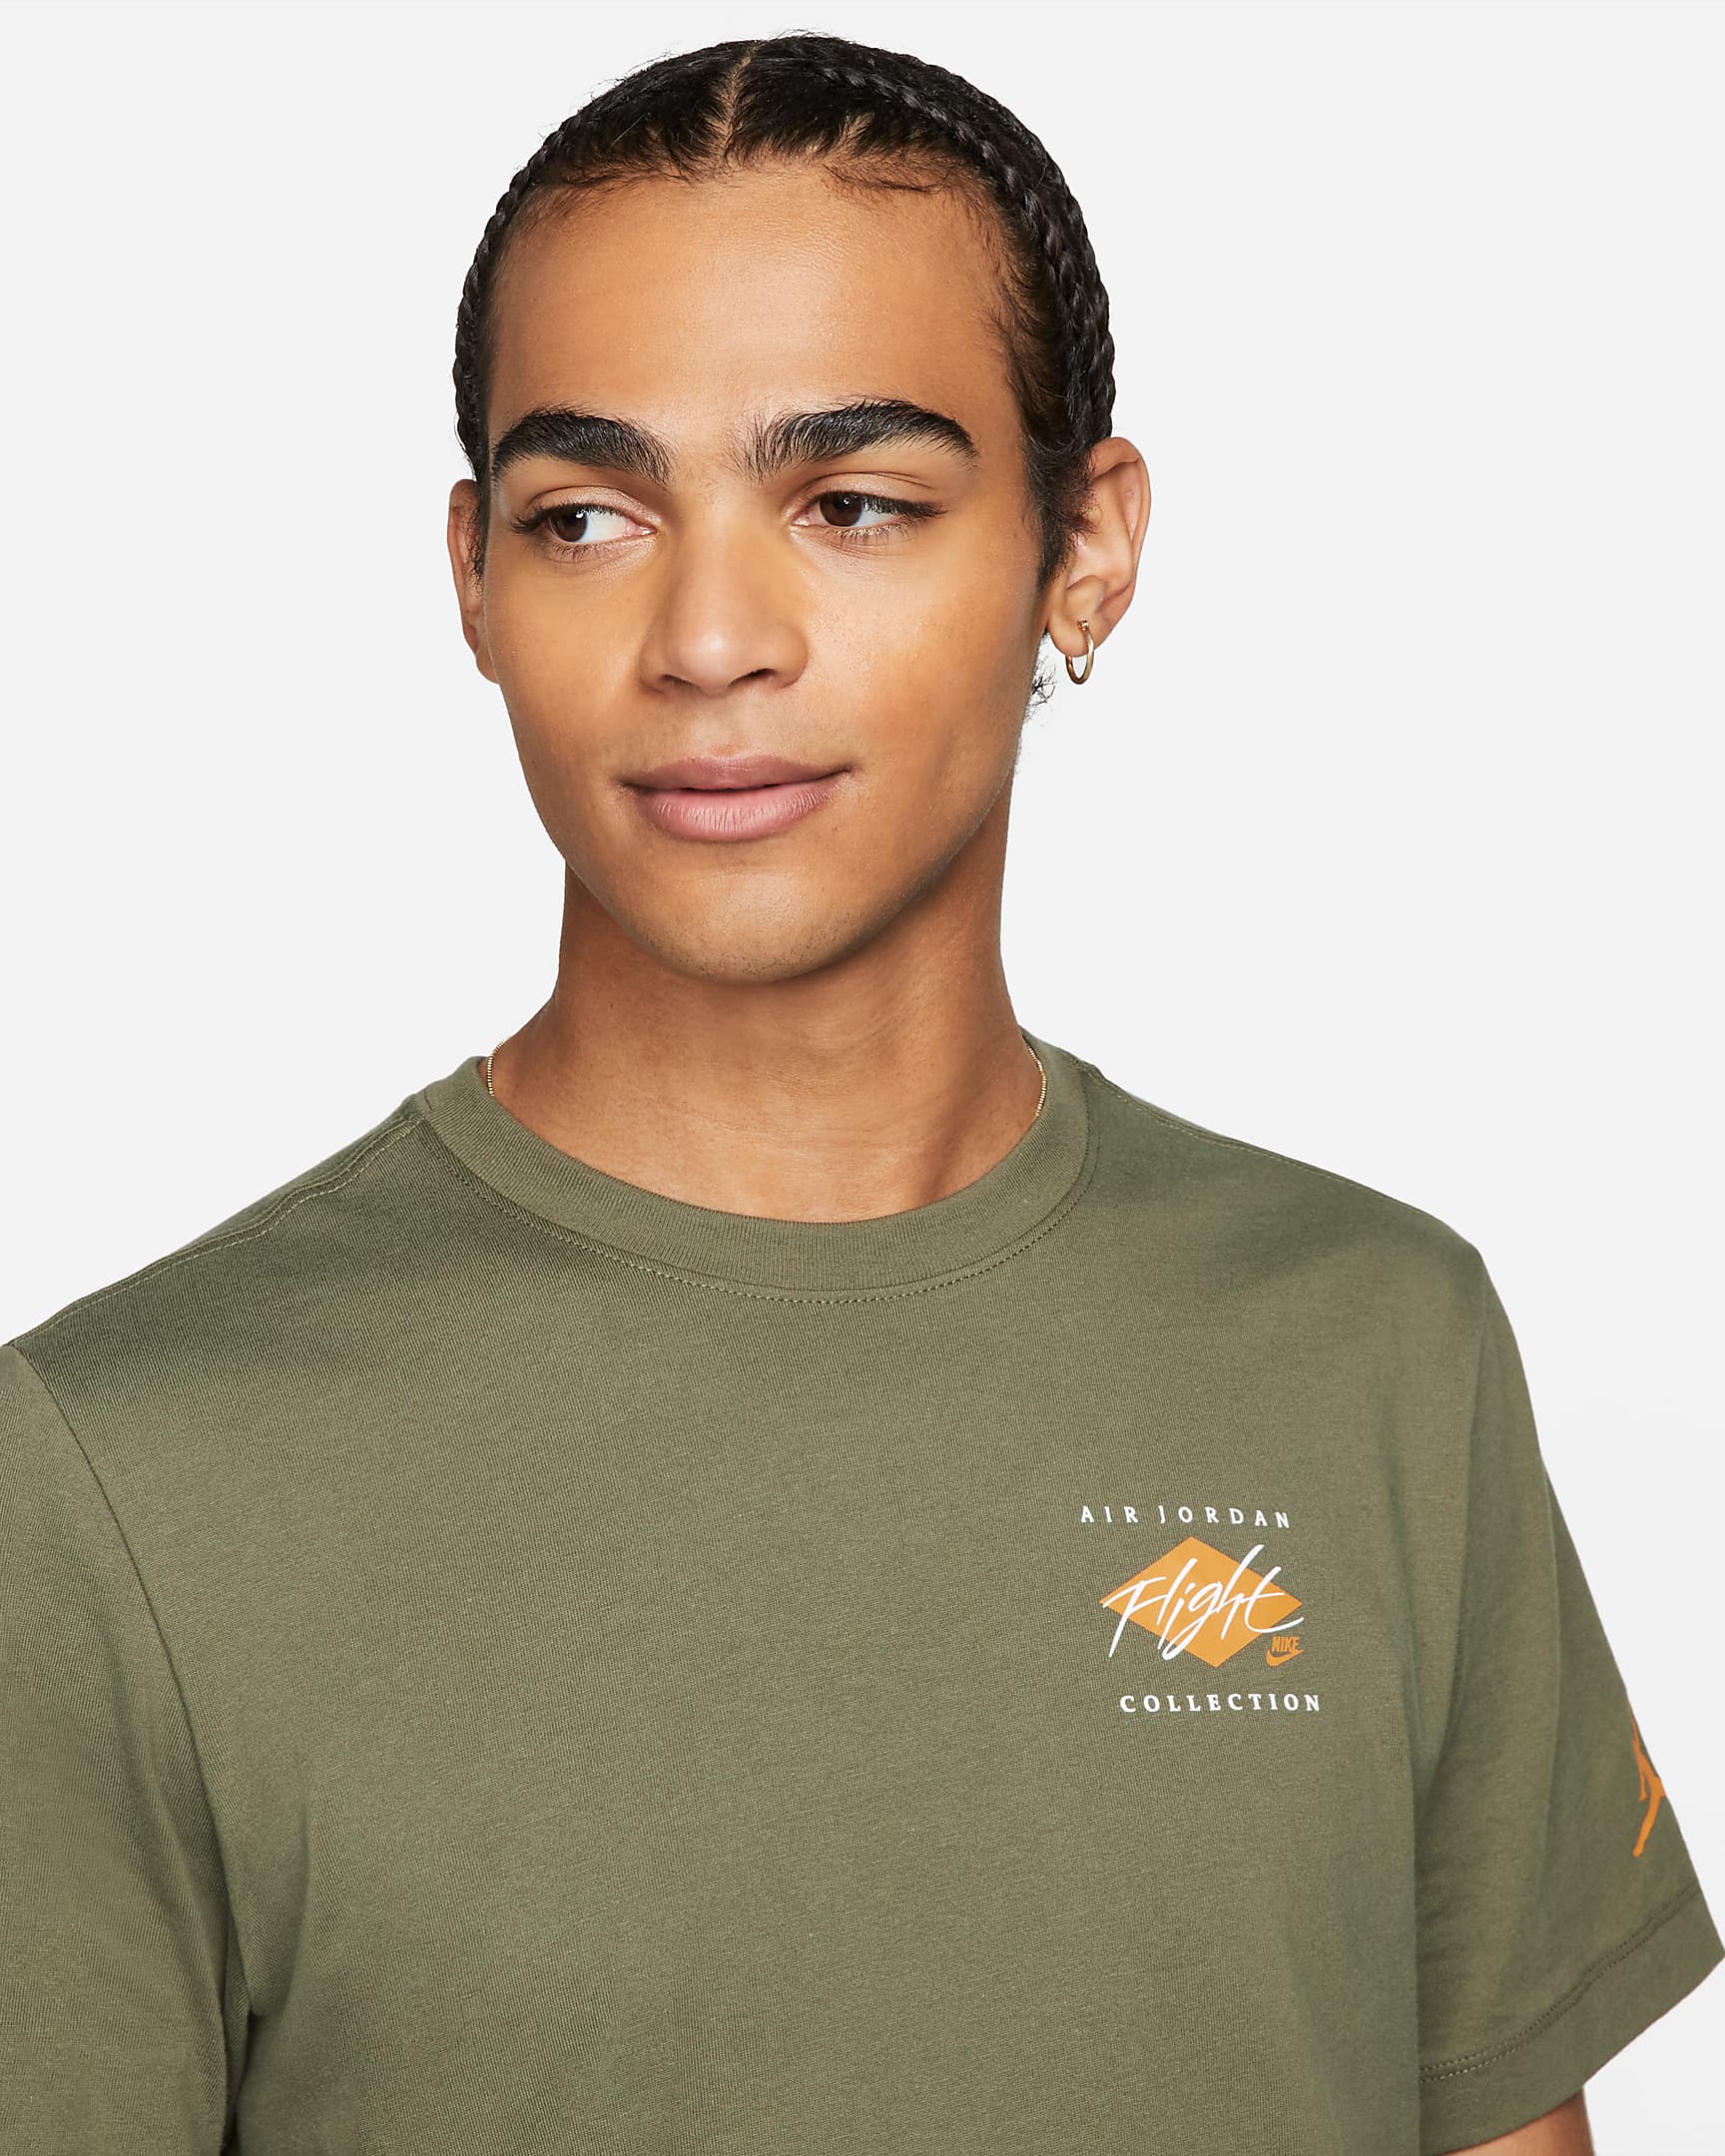 jordan-flight-essentials-mens-graphic-t-shirt-16sGpK-2.png